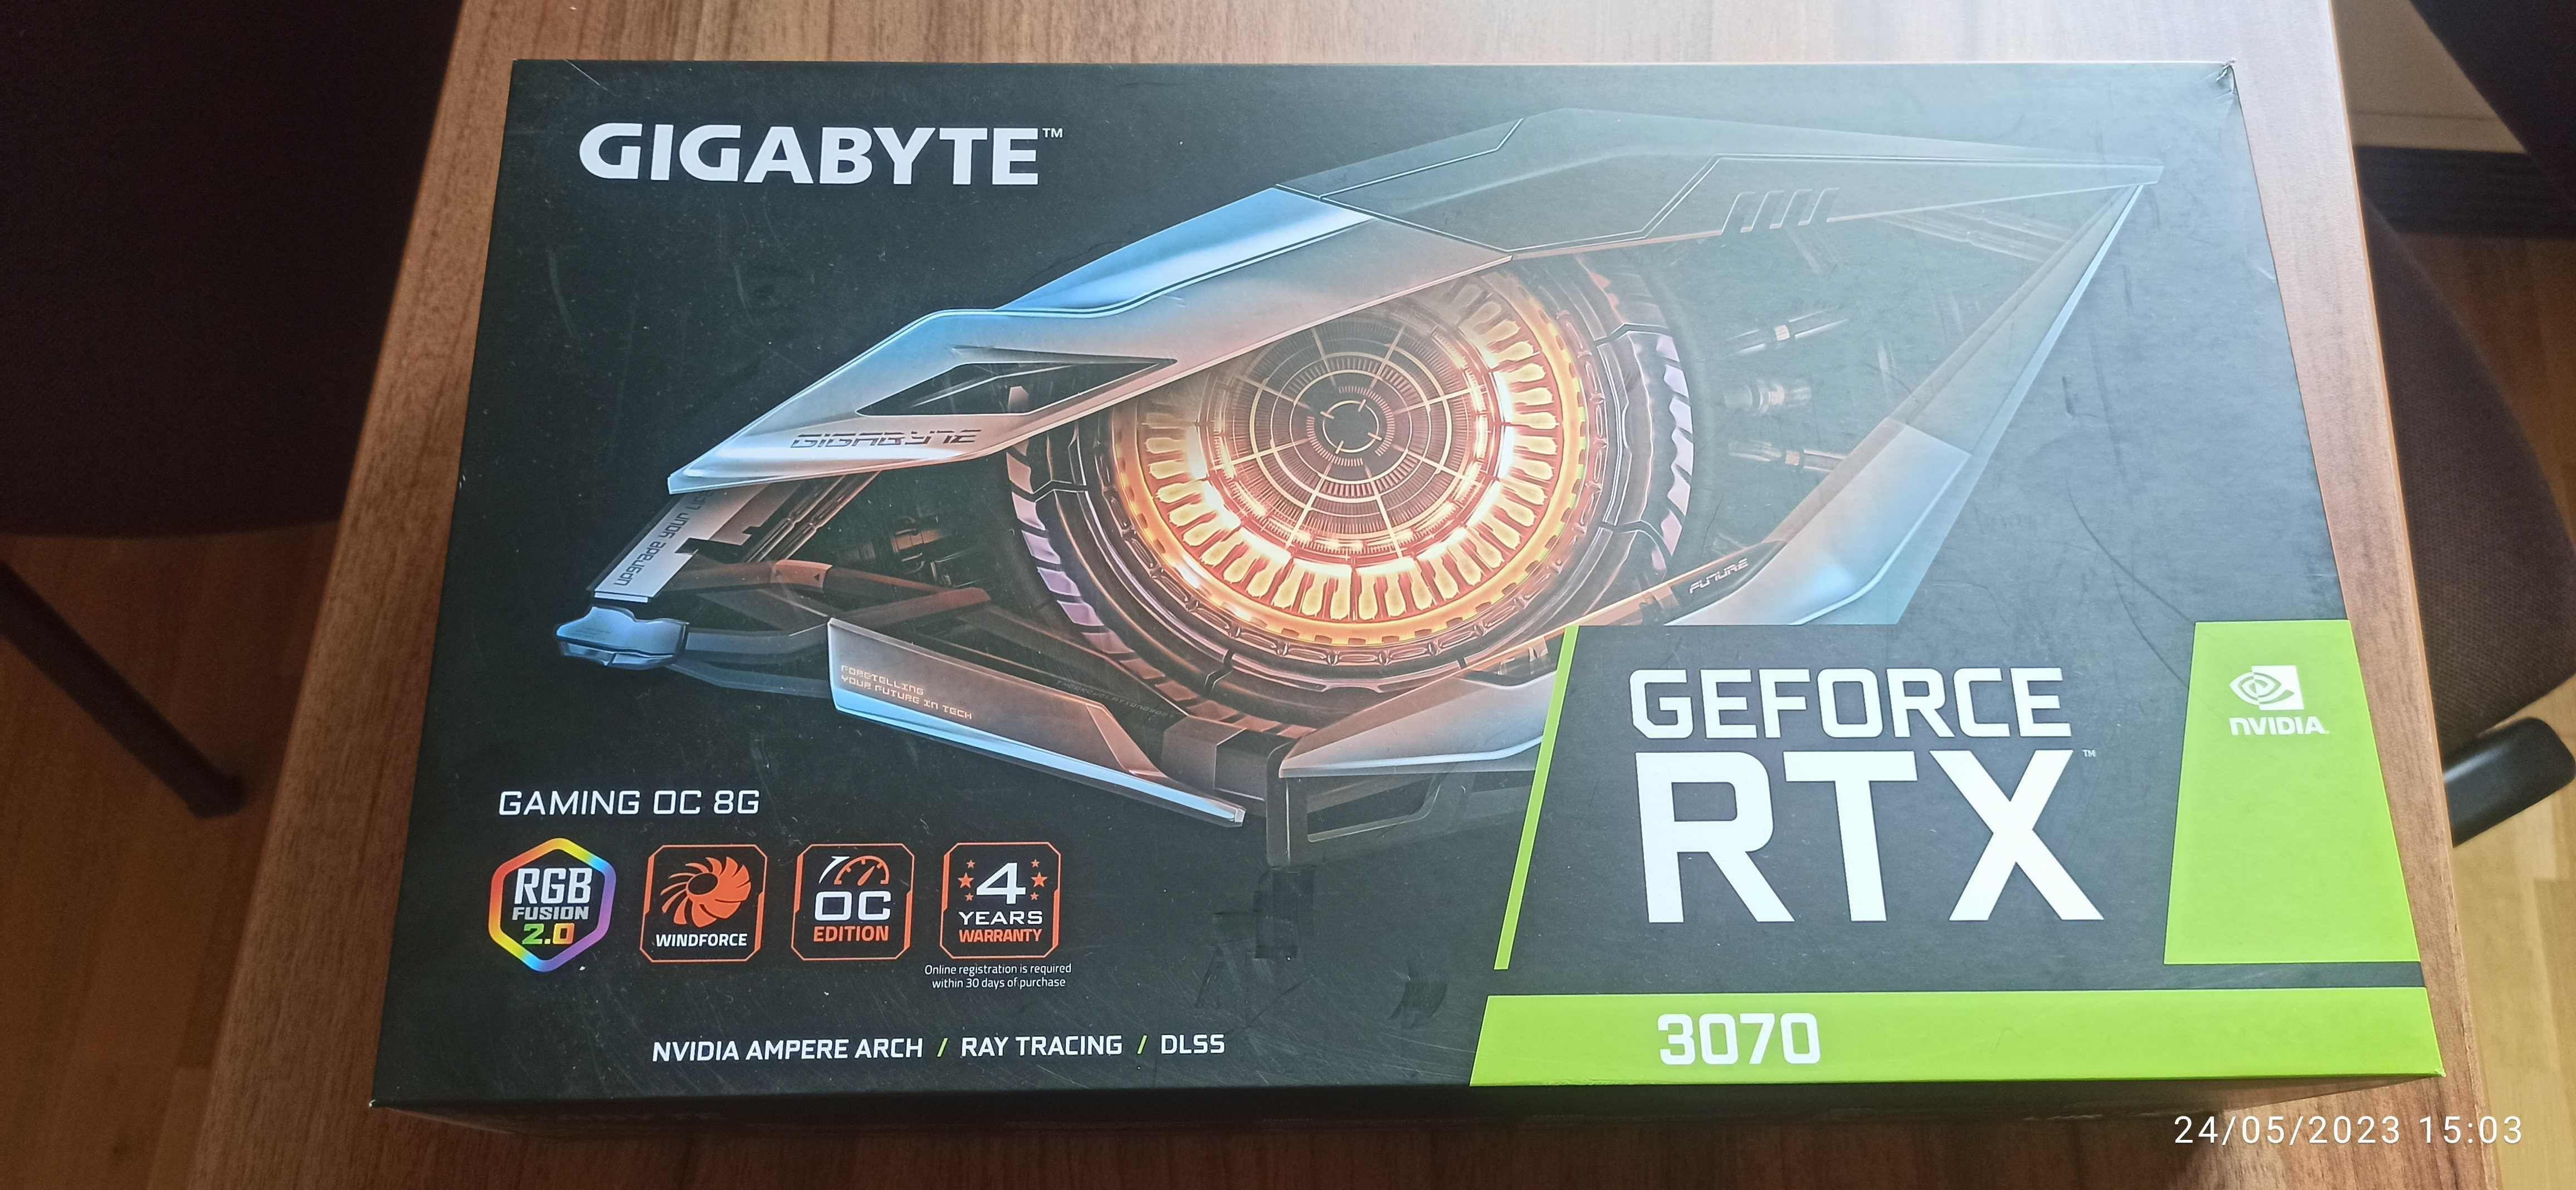 GIGABYTE GeForce RTX 3070 GAMING OC 8GB  256-bit  LHR v.2.0 (Garantie)